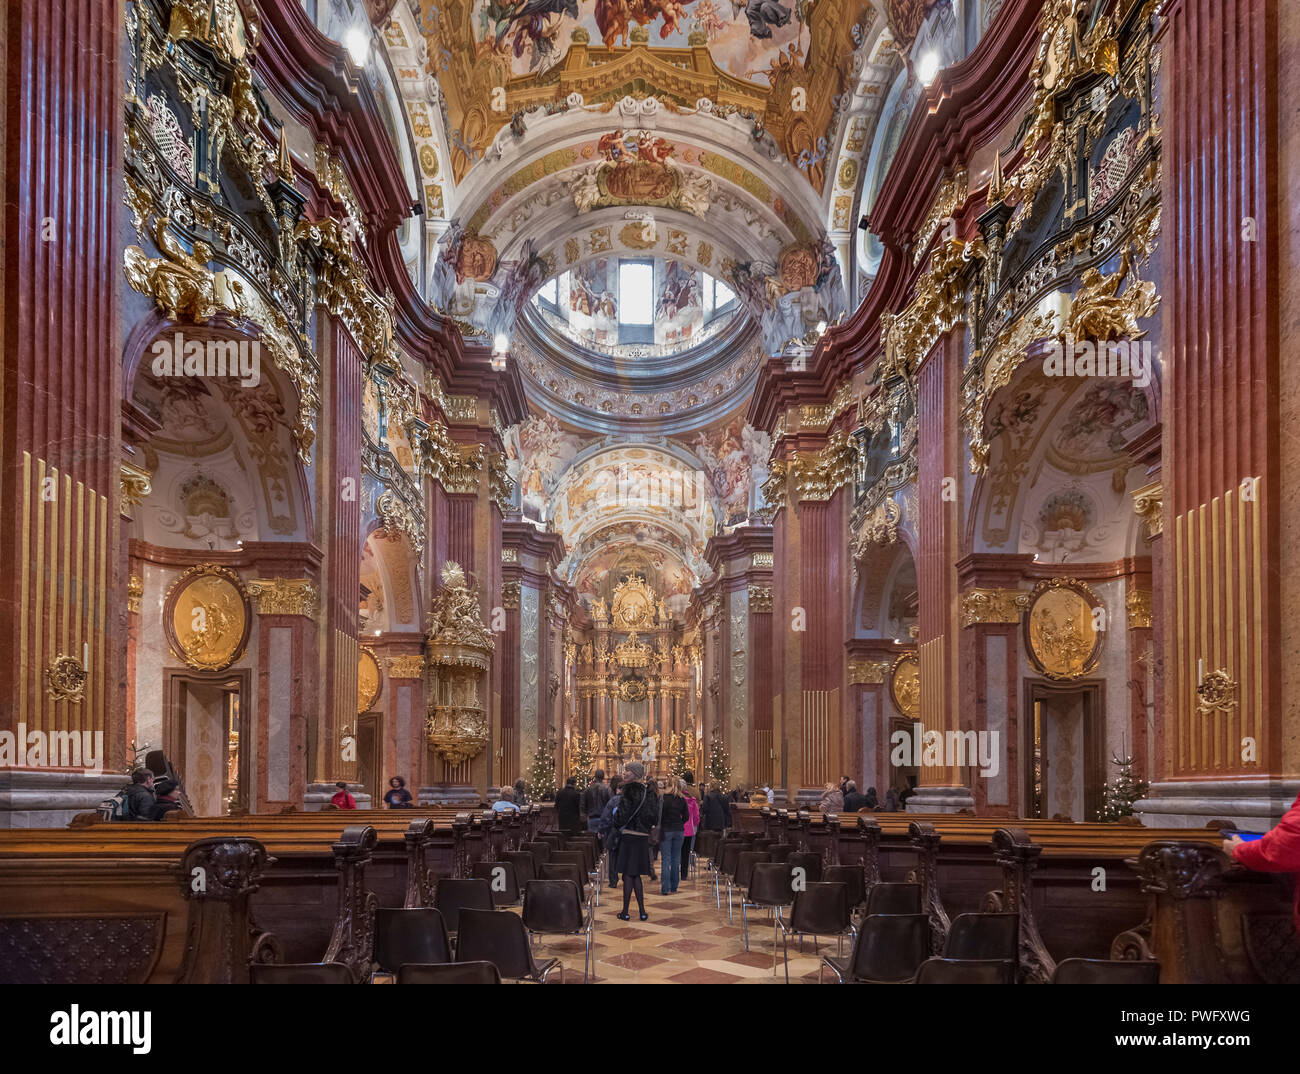 Melk Abbey,Austria Stock Photo